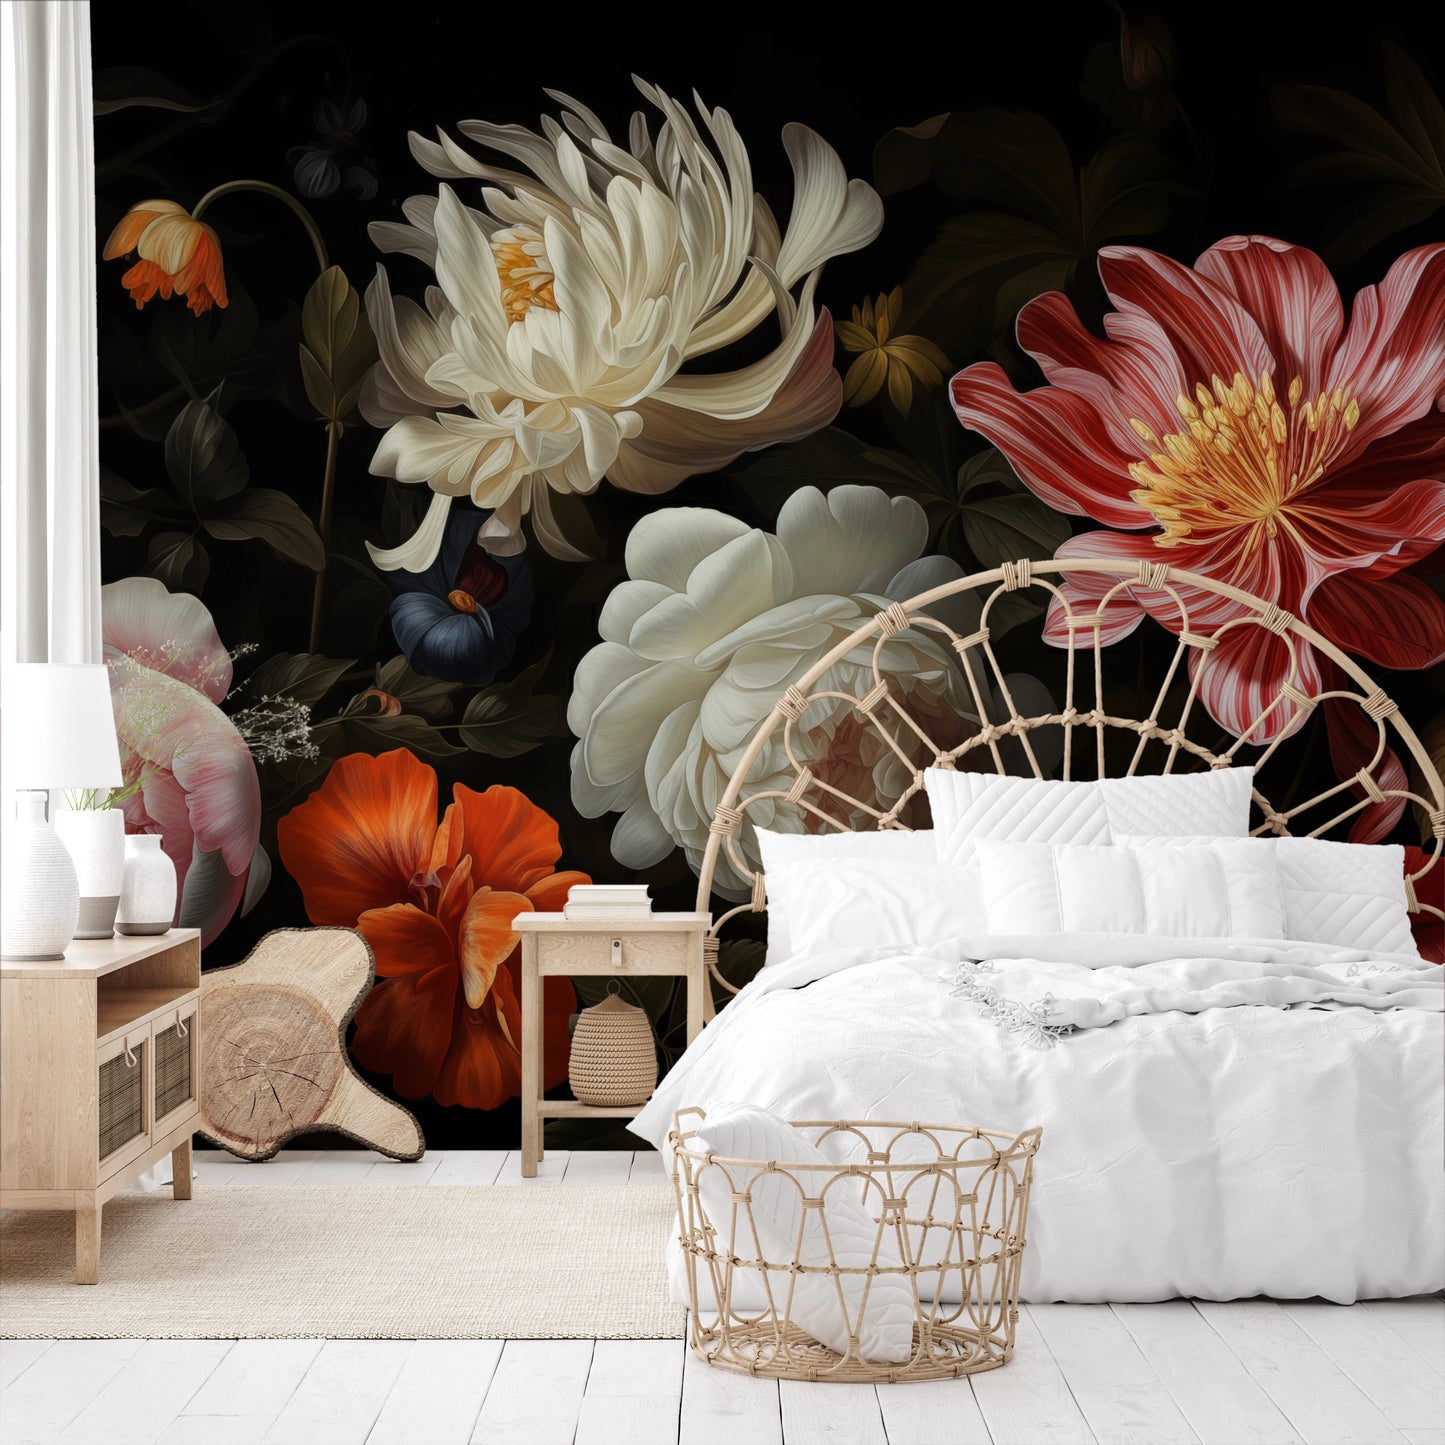 Wzór fototapety o nazwie Dutch Floral Masterpiece pokazanej w kontekście pomieszczenia.